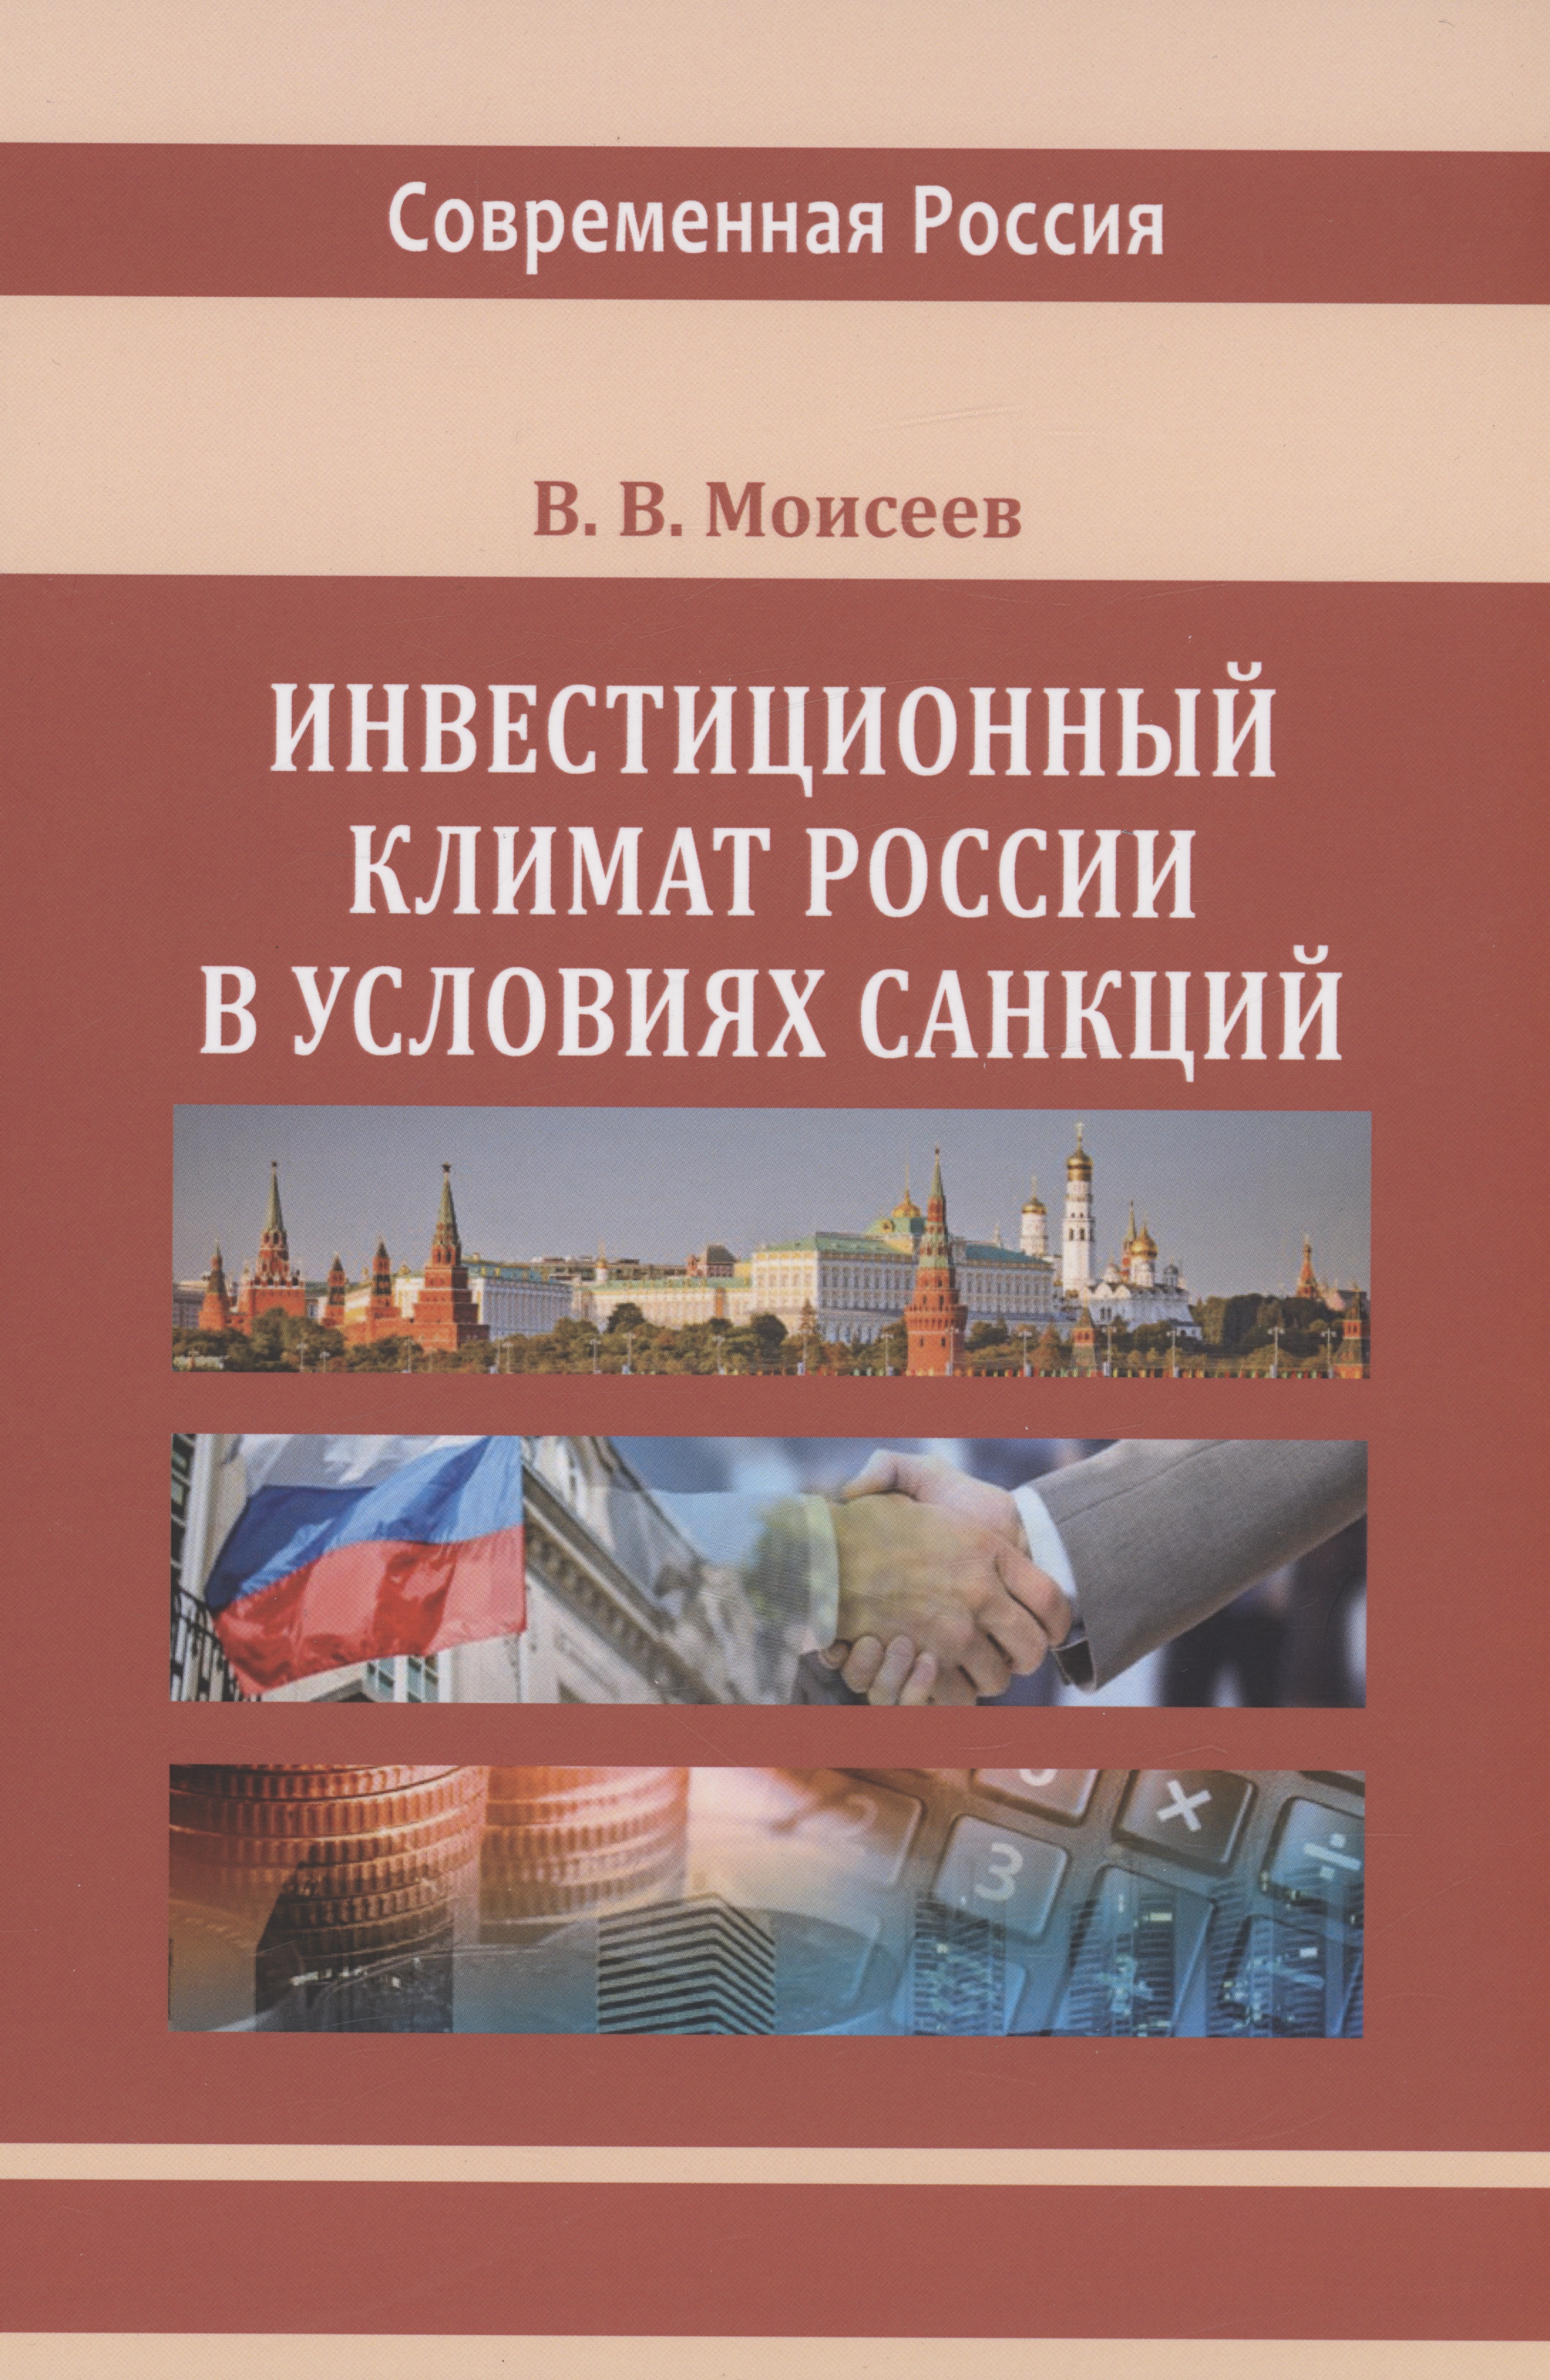 Инвестиционный климат России в условиях санкций